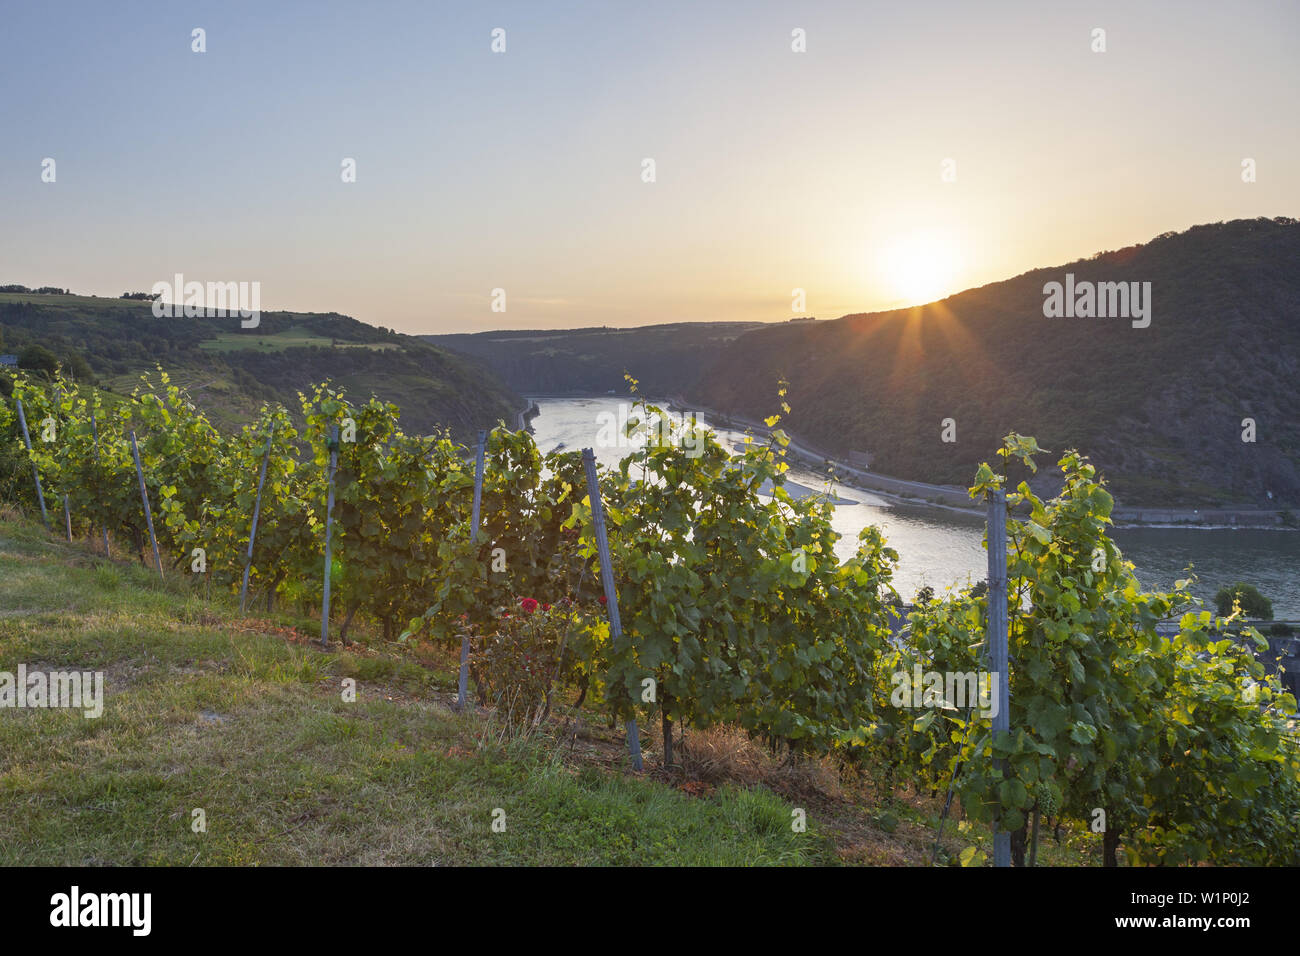 Vue sur les vignes au bord du Rhin, la Vallée du Haut-Rhin moyen, la Rhénanie-Palatinat, Allemagne, Europe Banque D'Images